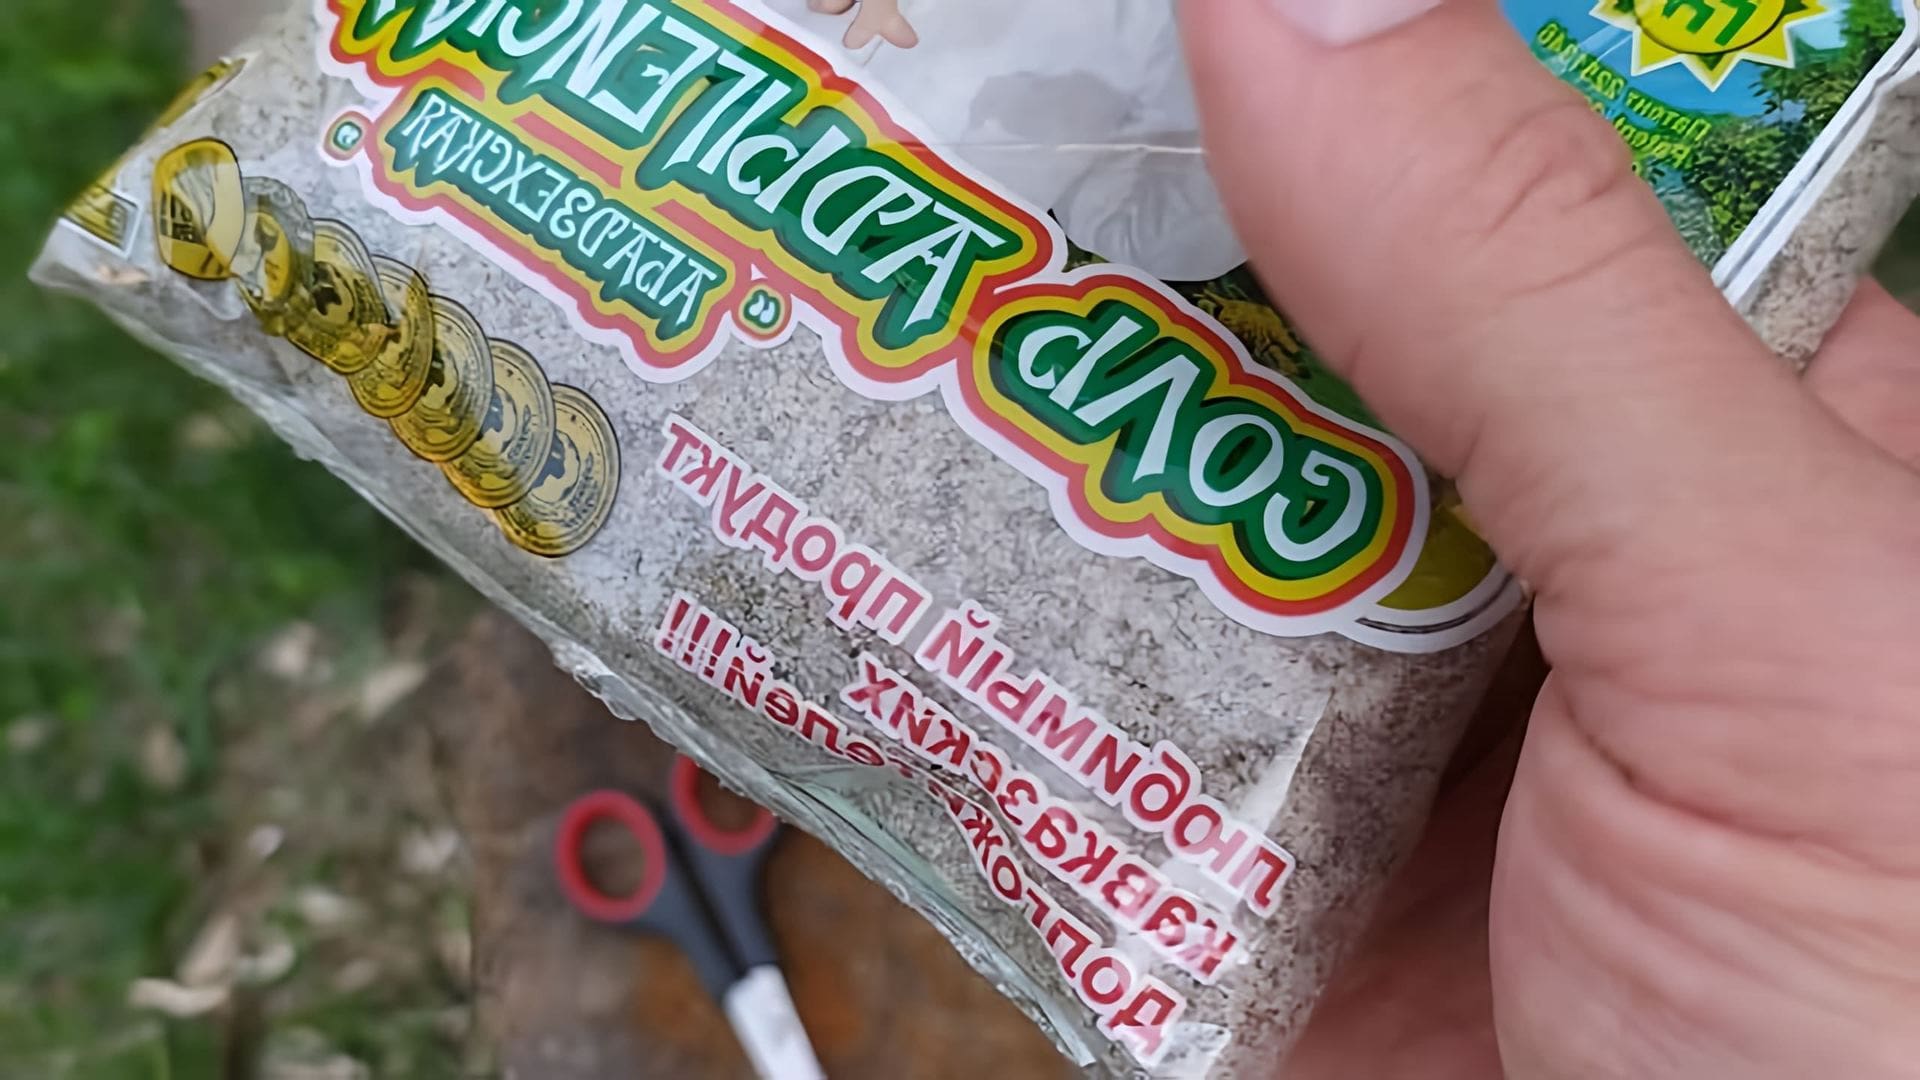 В данном видео демонстрируется продукт - соль адыгейская абадзехская